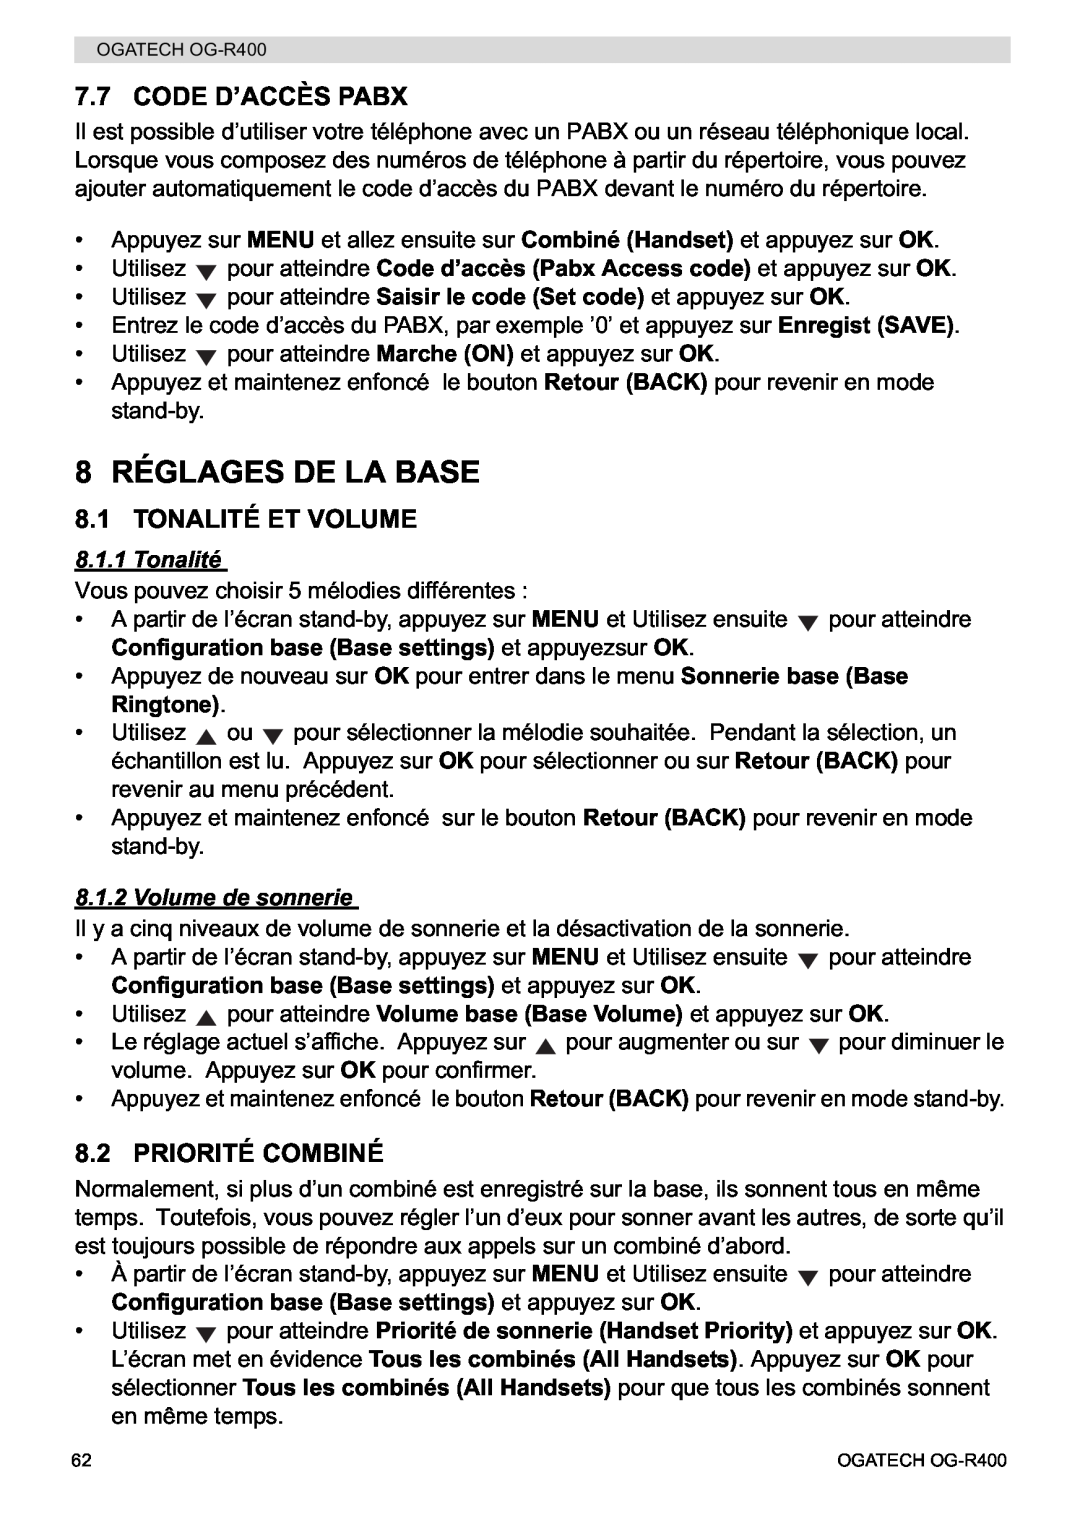 Topcom OG-R400 manual 8 RÉGLAGES DE LA BASE, Code D’Accès Pabx, Tonalité Et Volume, Priorité Combiné, Volume de sonnerie 